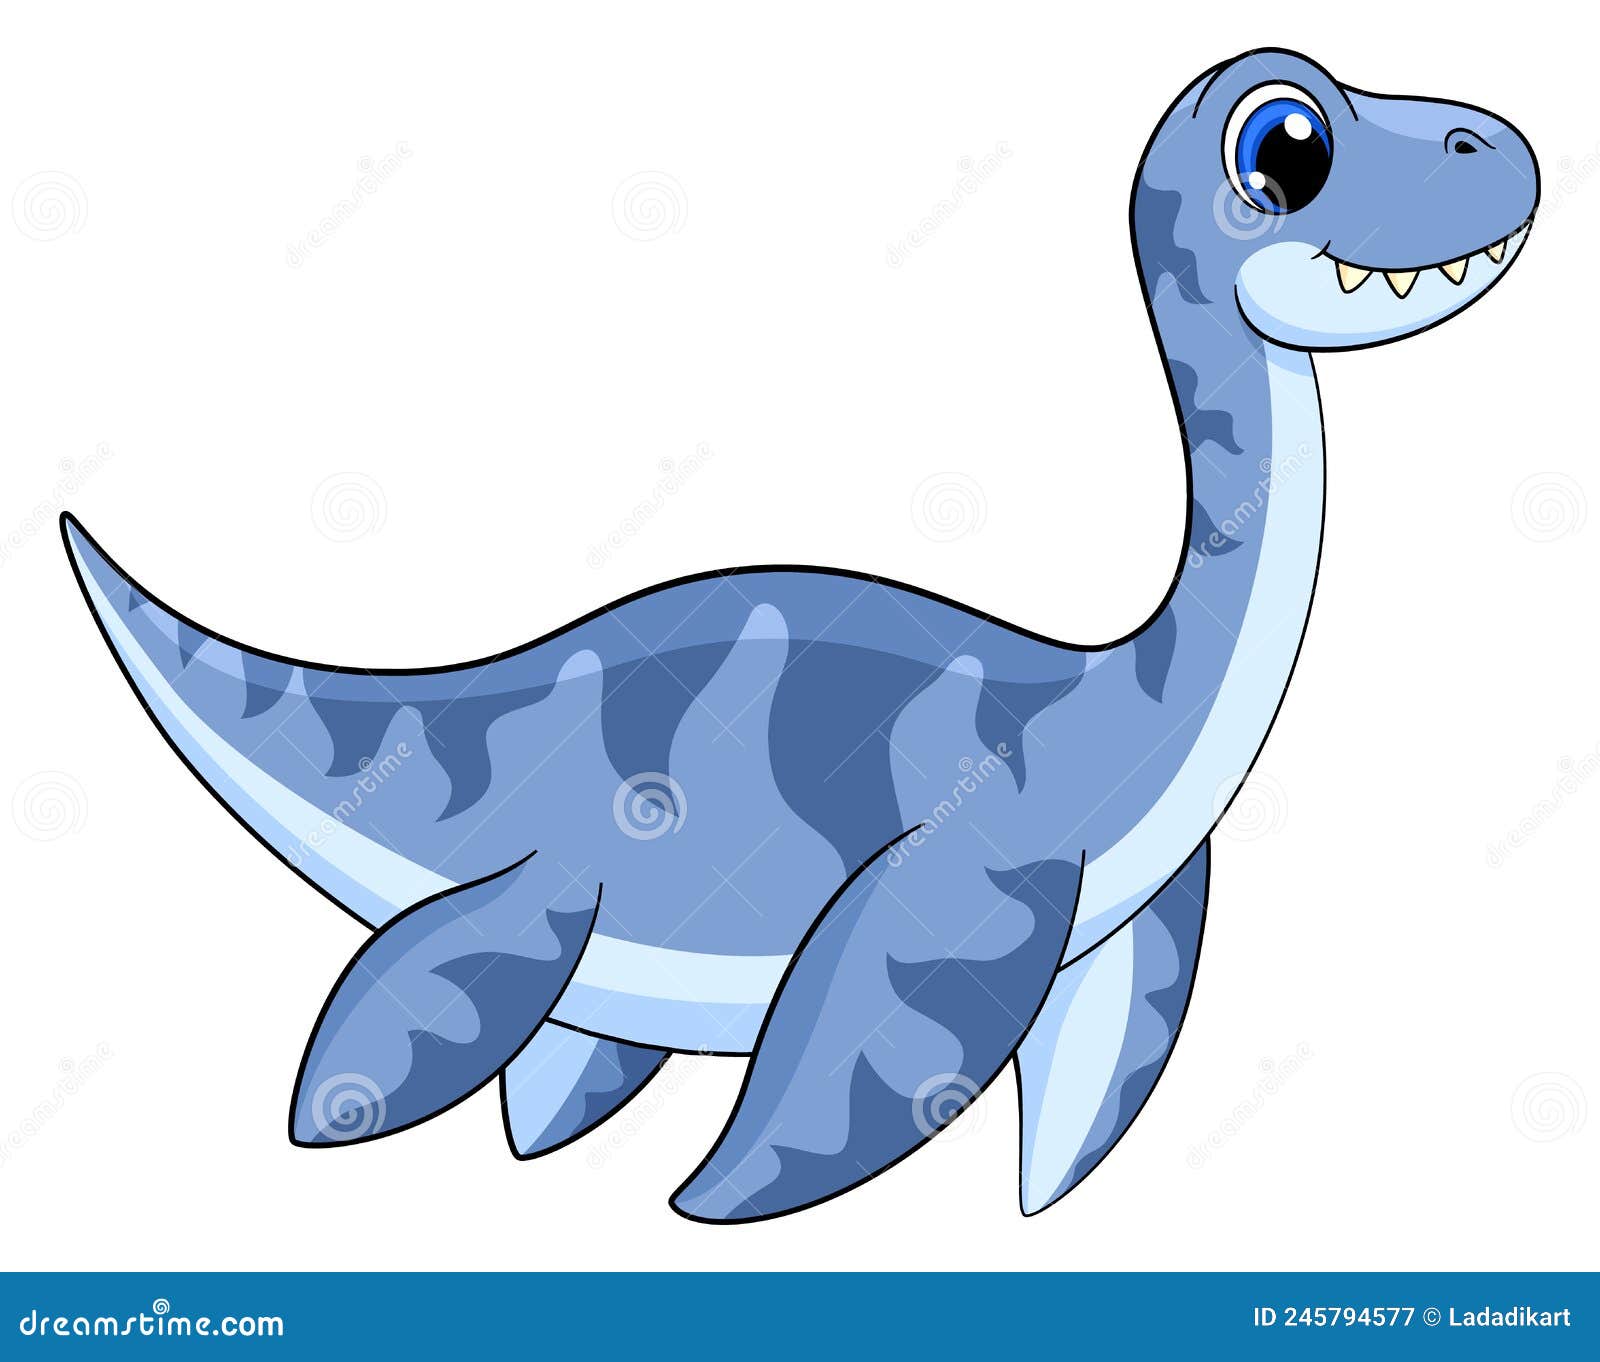 um pequeno e fofinho dinossauro azul bebê, desenho animal cartoon